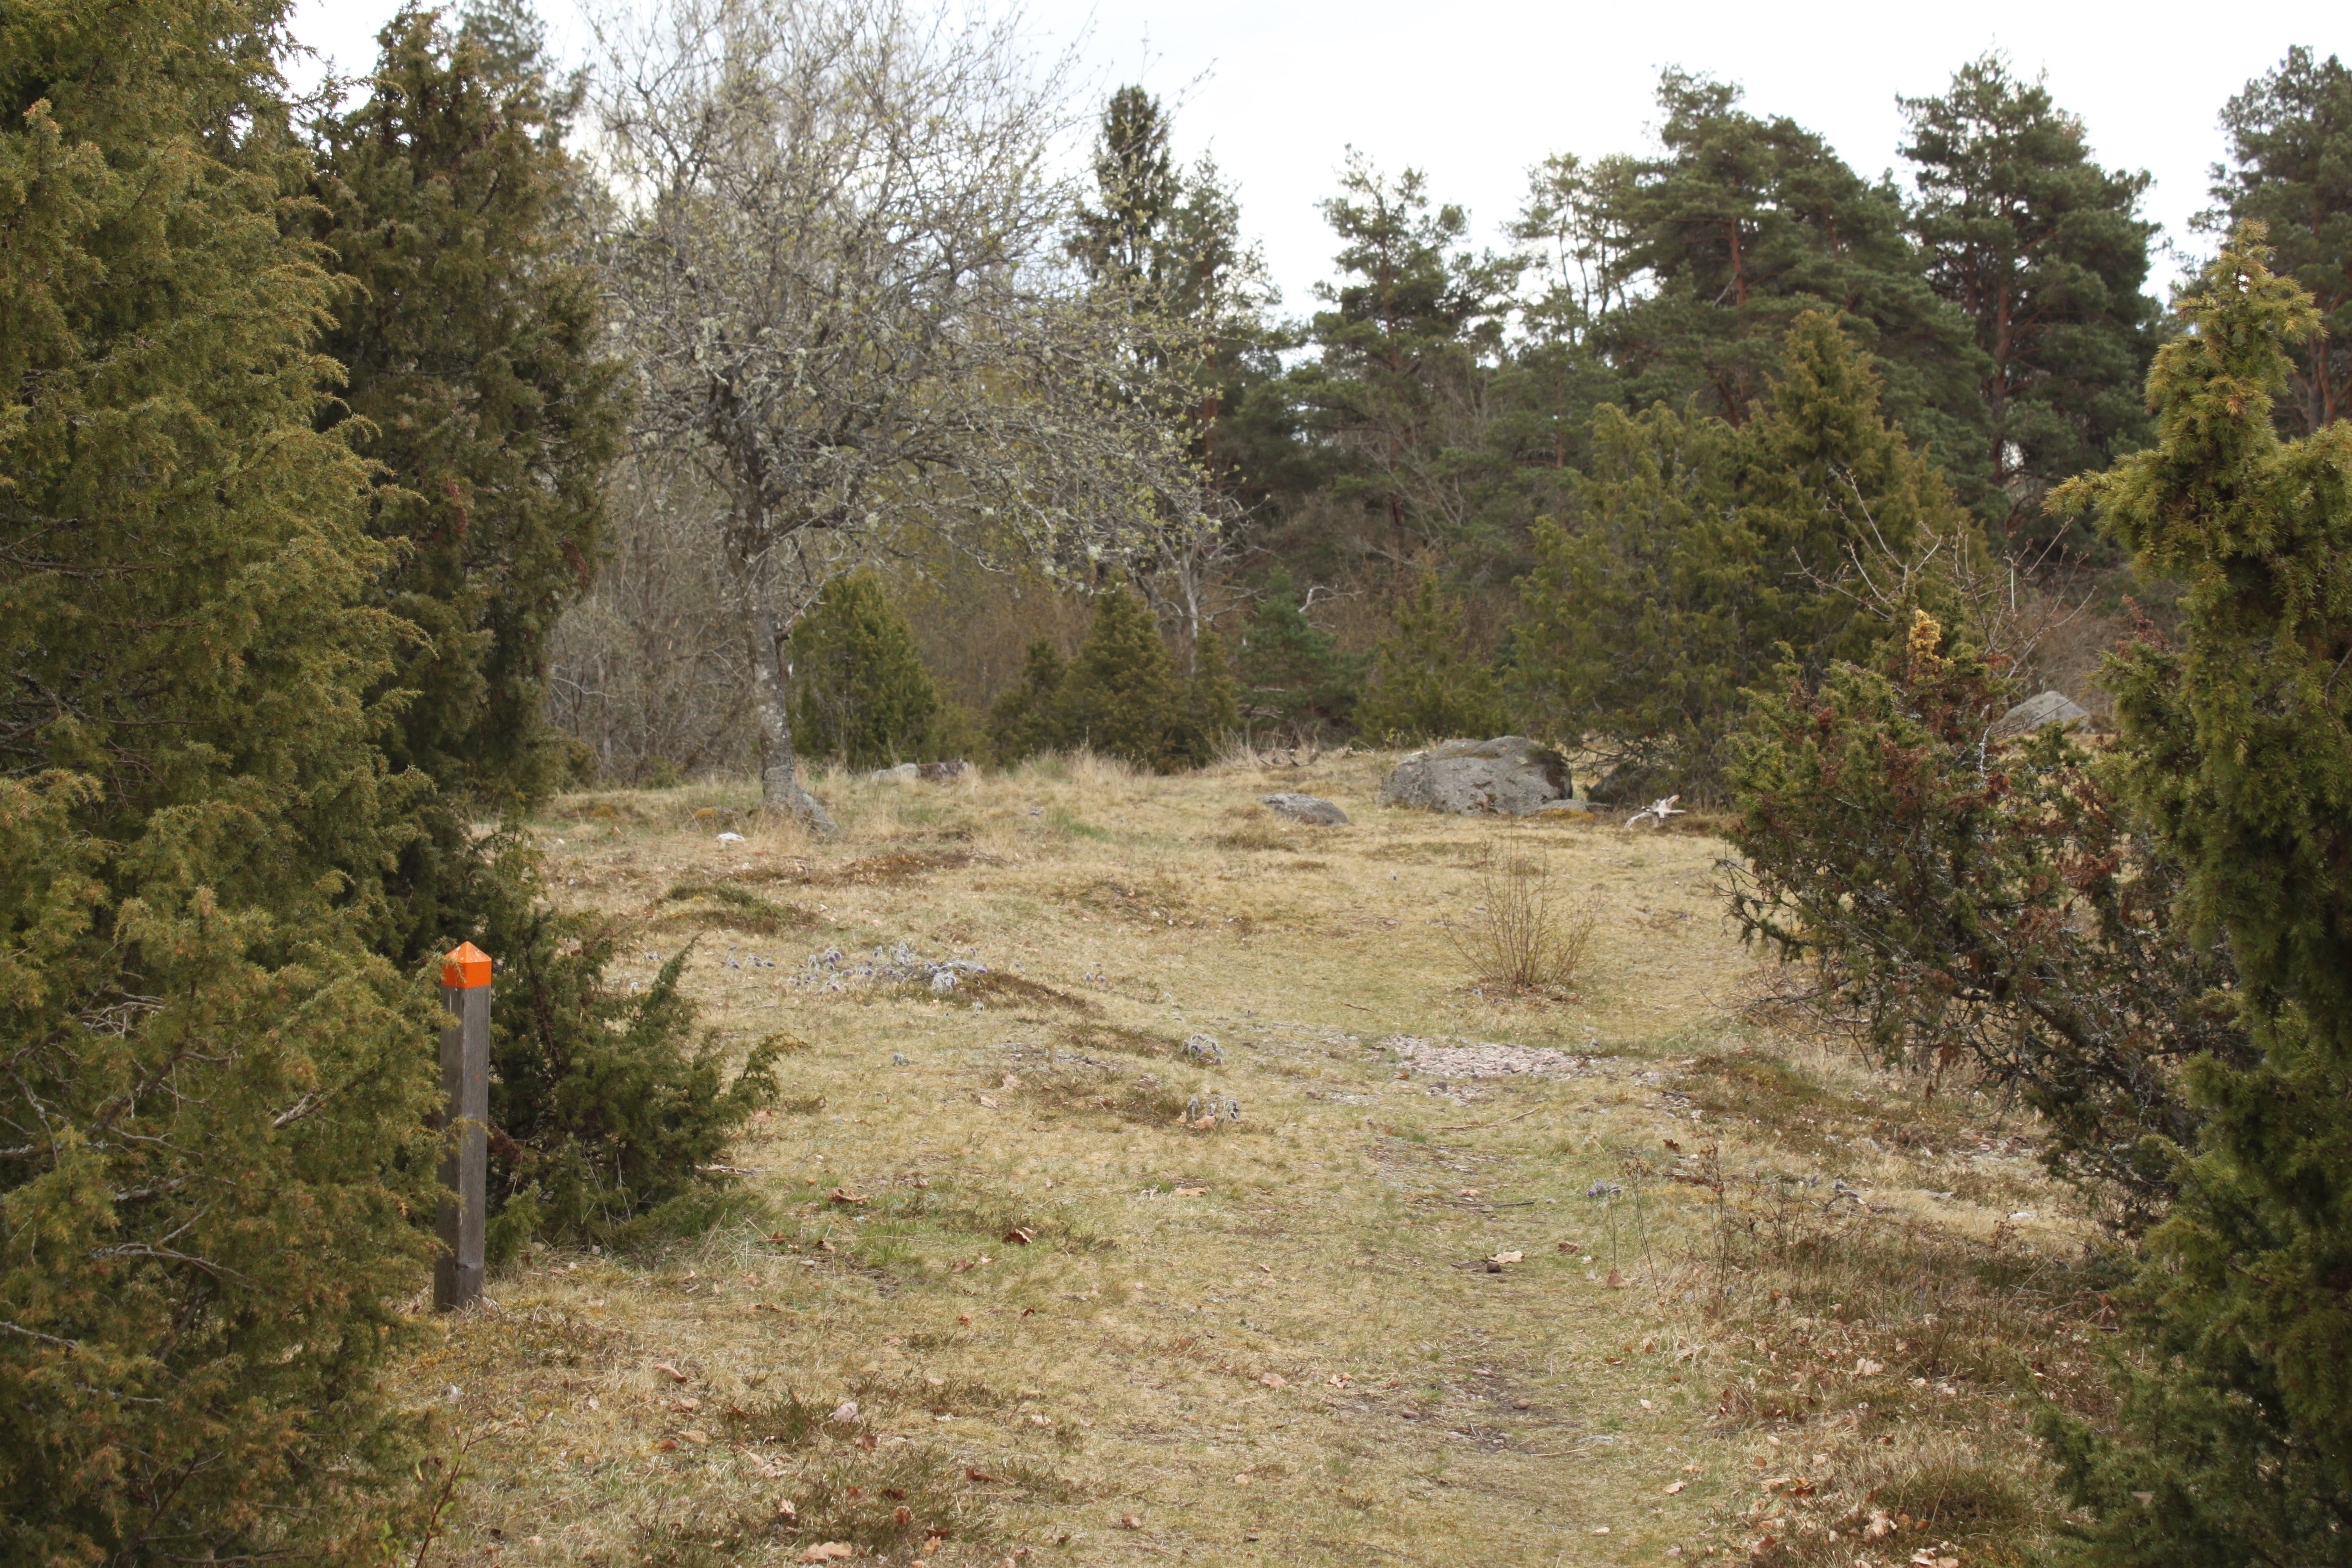 En stig leder fram till något stenig mark. Runtom finns flera enbuskar och stigmarkering på en kort stolpe bredvid.